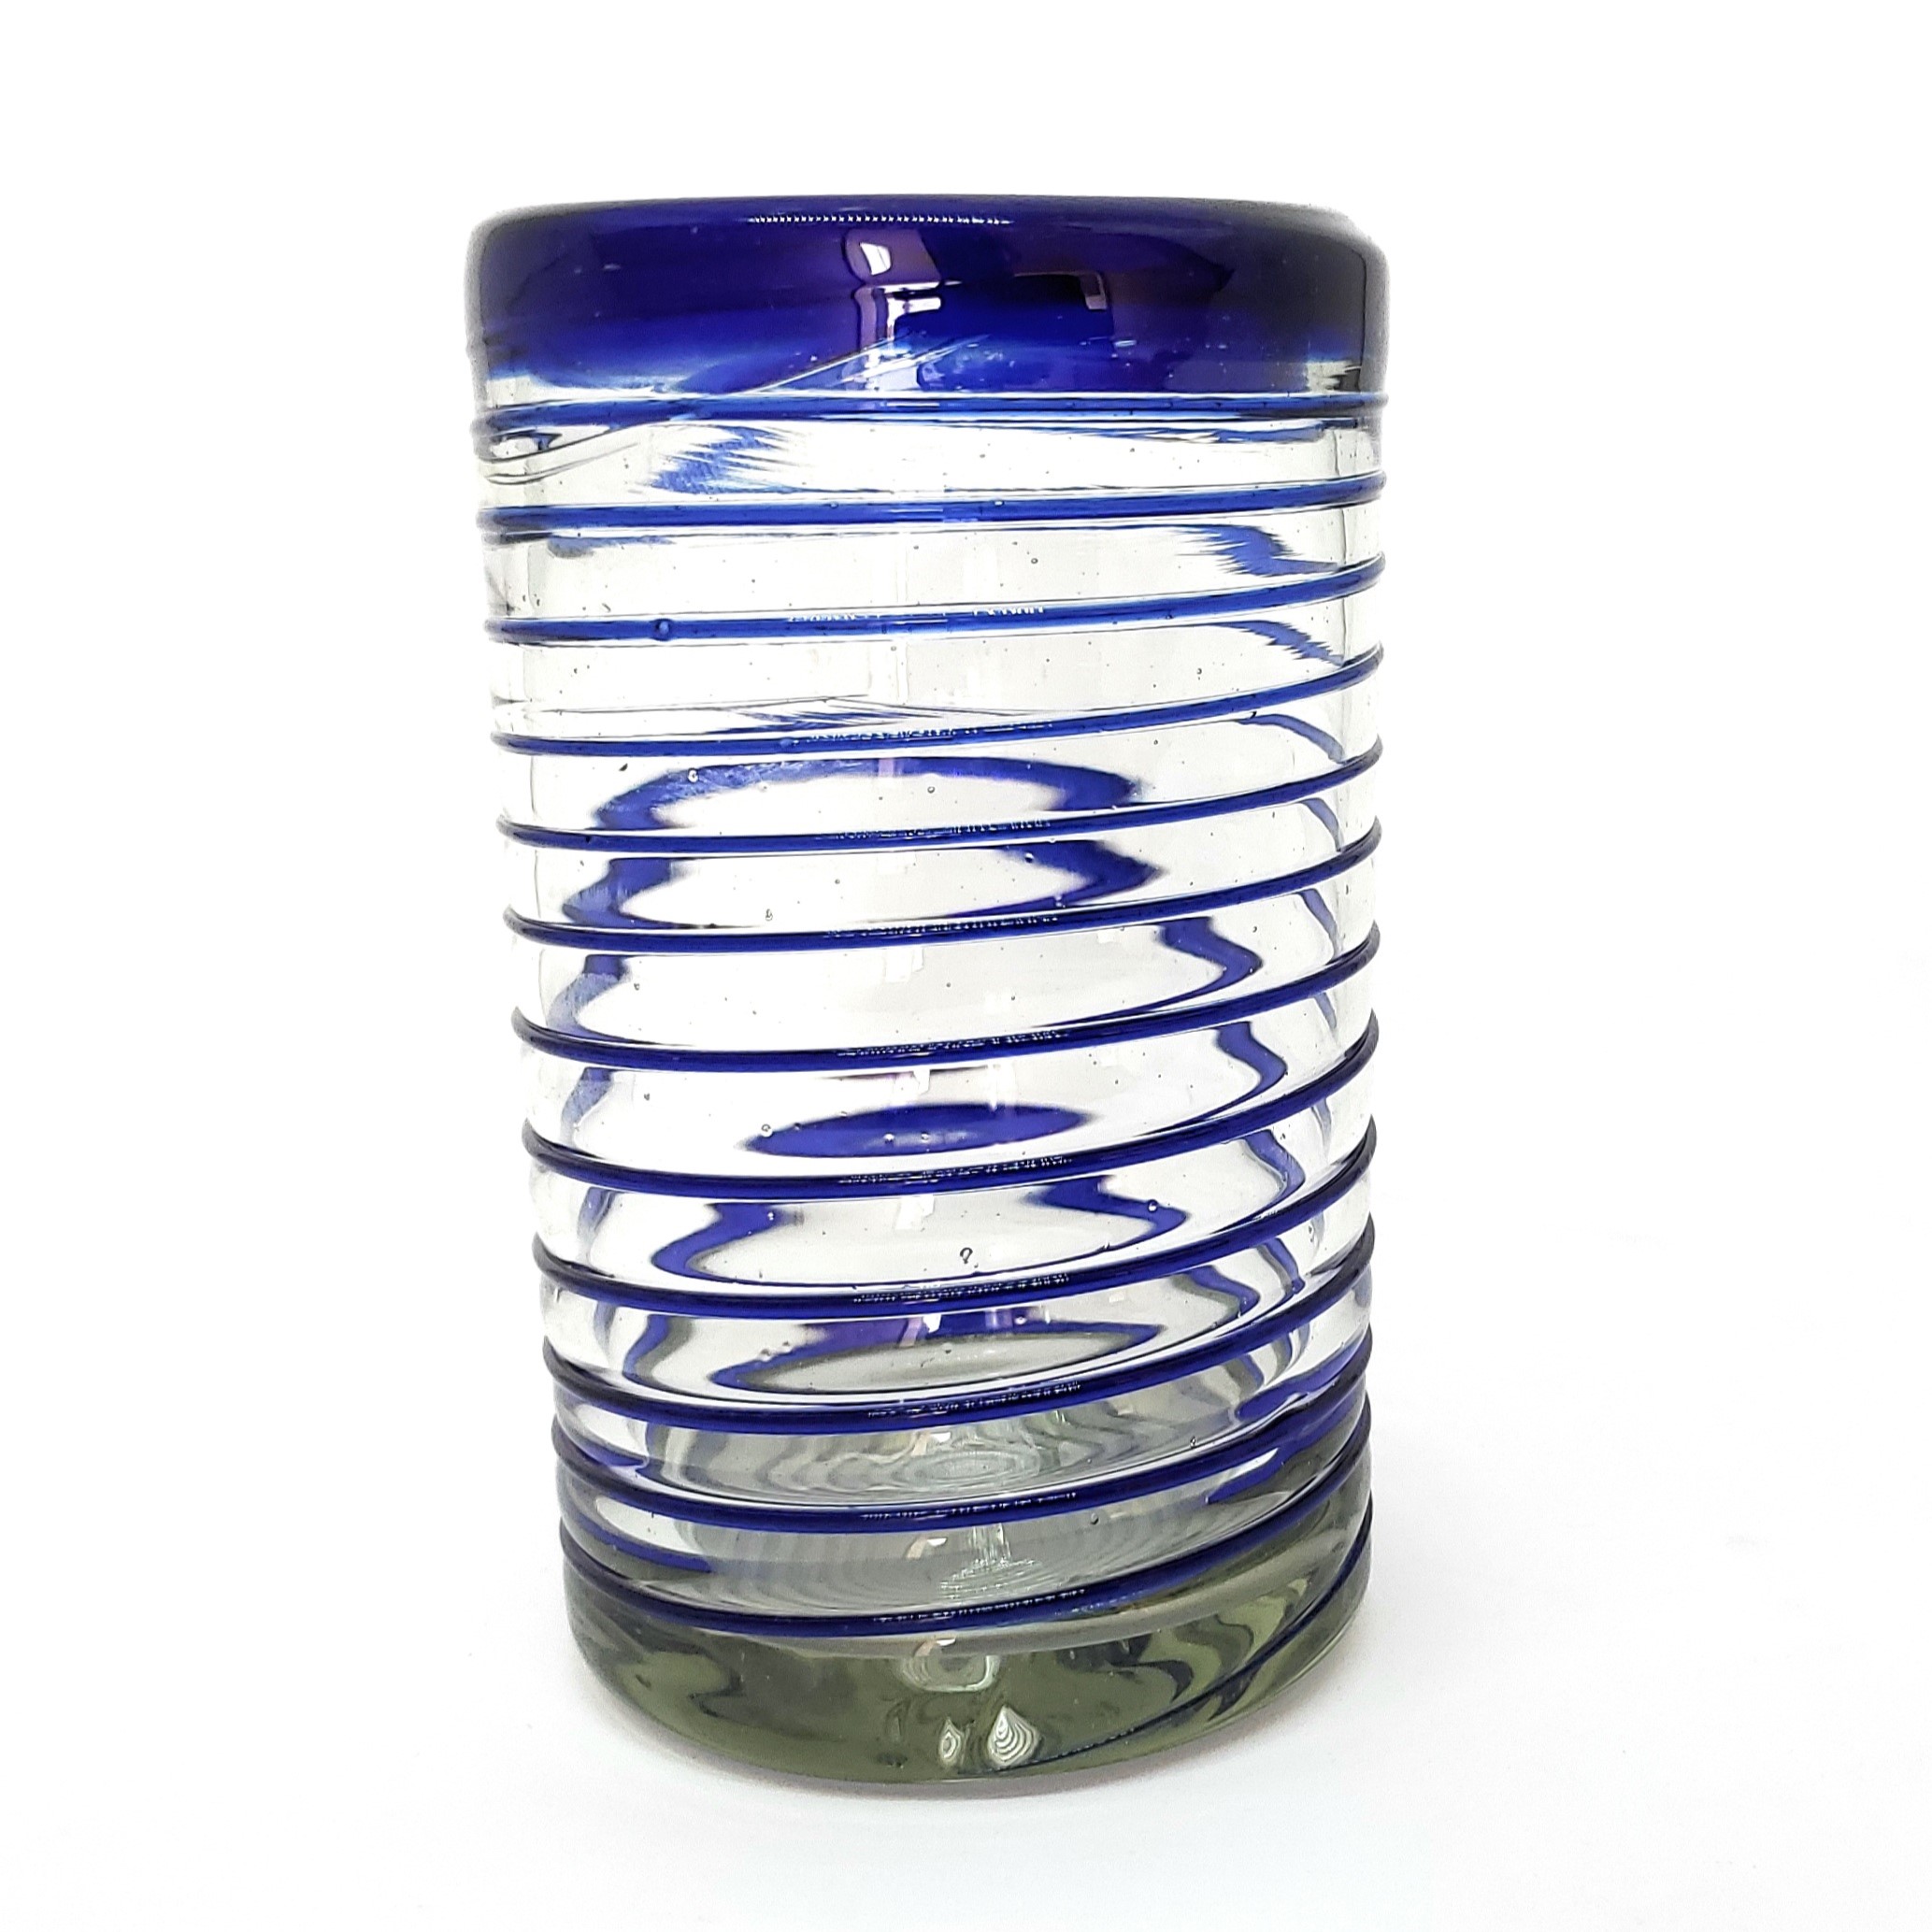 VIDRIO SOPLADO al Mayoreo / vasos grandes con espiral azul cobalto / Éstos elegantes vasos cubiertos con una espiral azul cobalto darán un toque artesanal a su mesa.